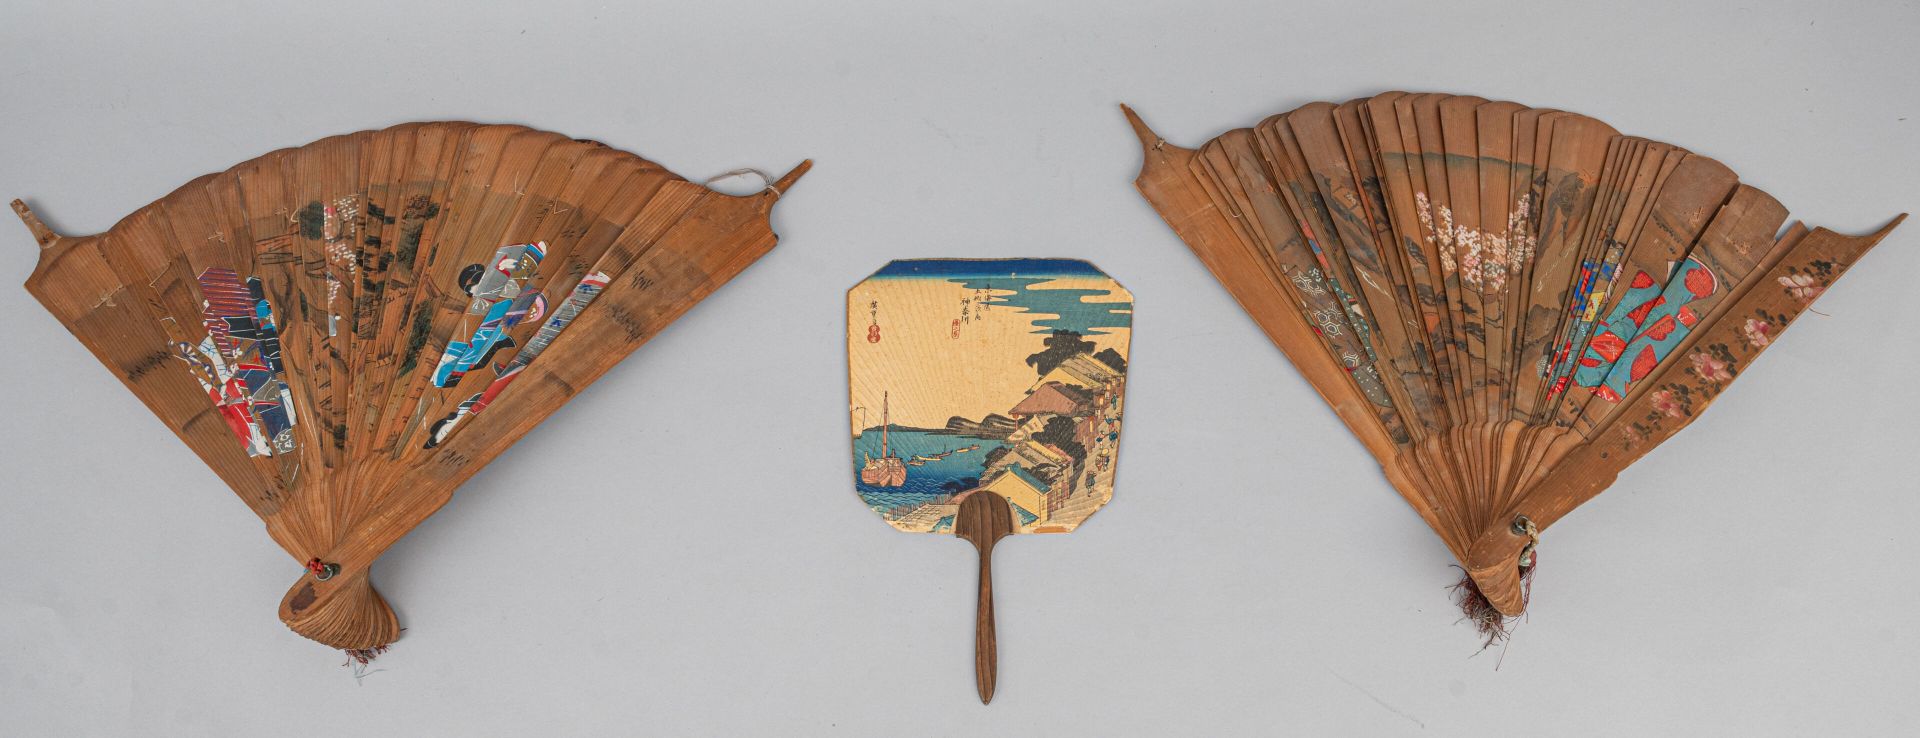 Null 三把扇子，日本，19 世纪 
一把硬质梯形手扇，一面饰有宇多川广重的版画，该版画出自神奈川的 "五十三回 "系列（小污点，底部有磨损和撕裂）；还有一对&hellip;